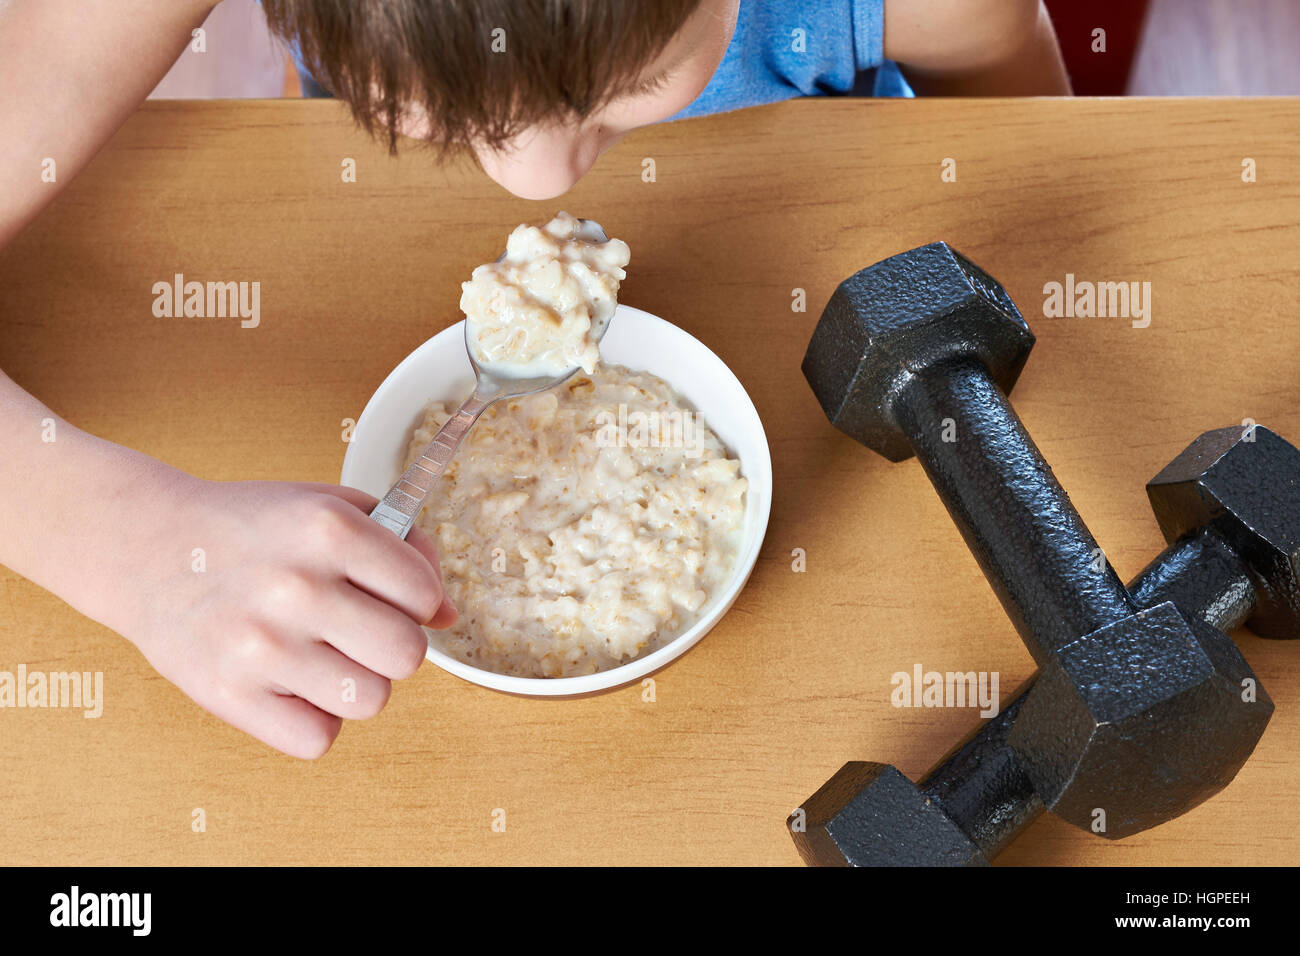 Boy eating porridge and dumbbells as symbols of sports lifestyle Stock Photo